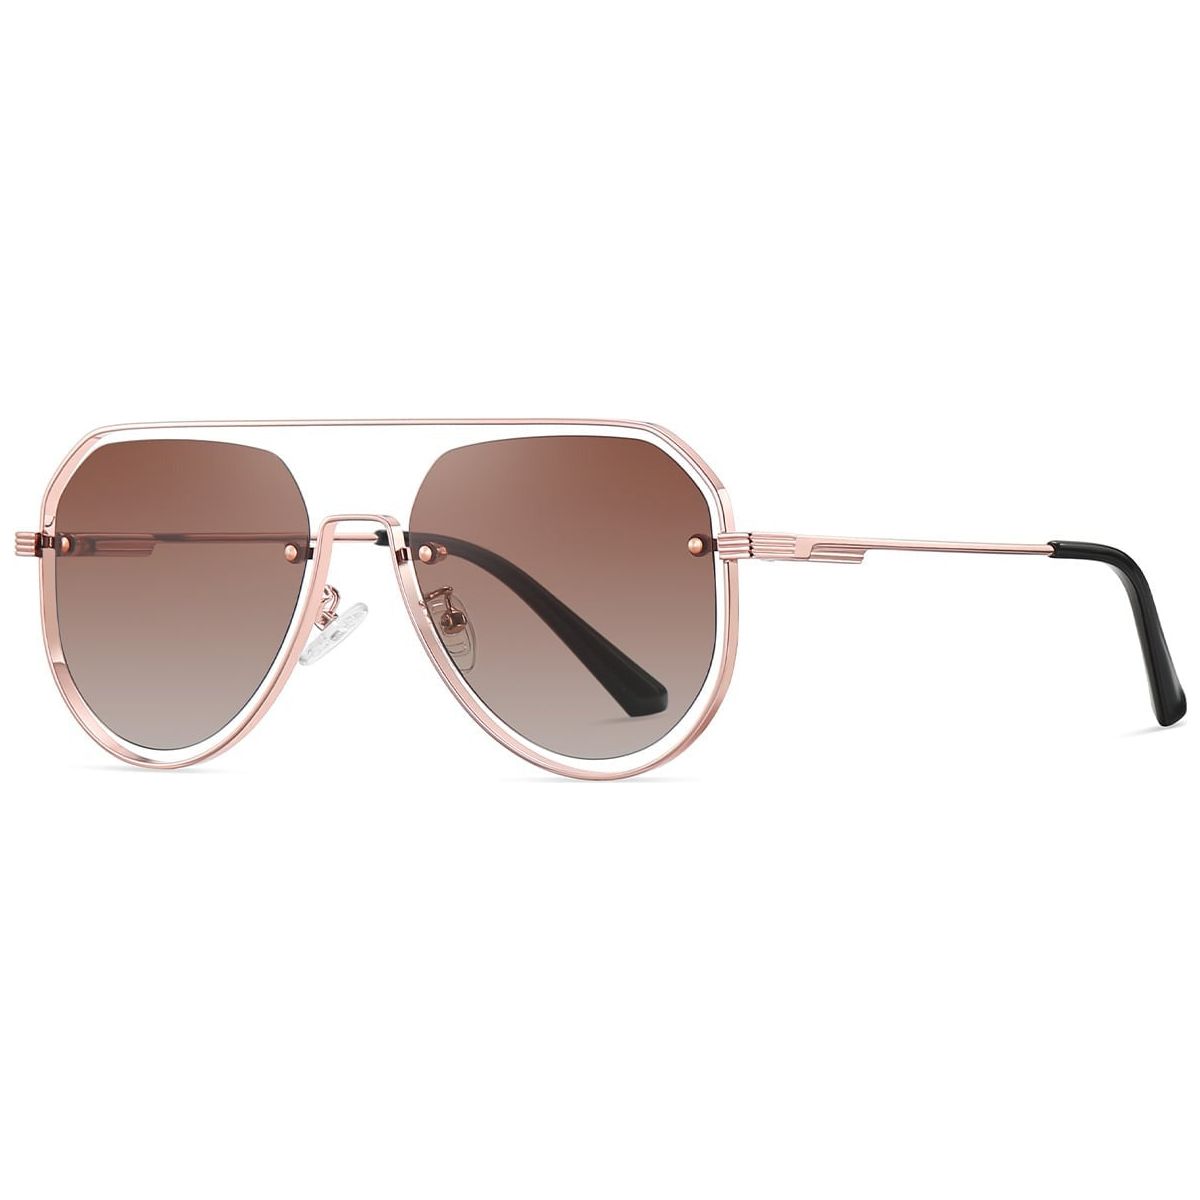 Candye Aviator Sunglasses SG5504 